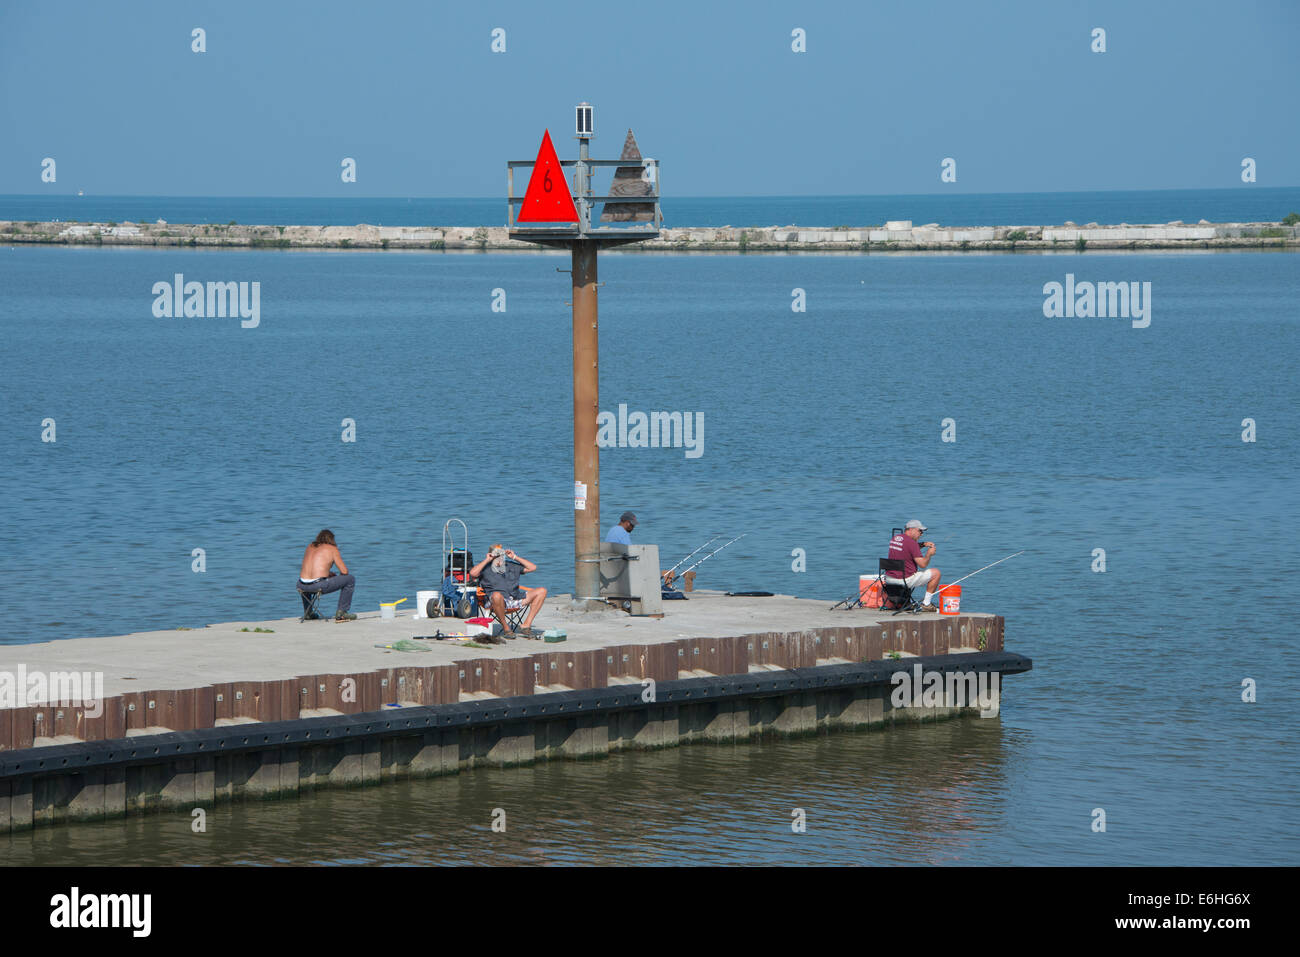 Ohio, Lake Erie, Cleveland. Cleveland Harbor, fishermen on the pier. Stock Photo